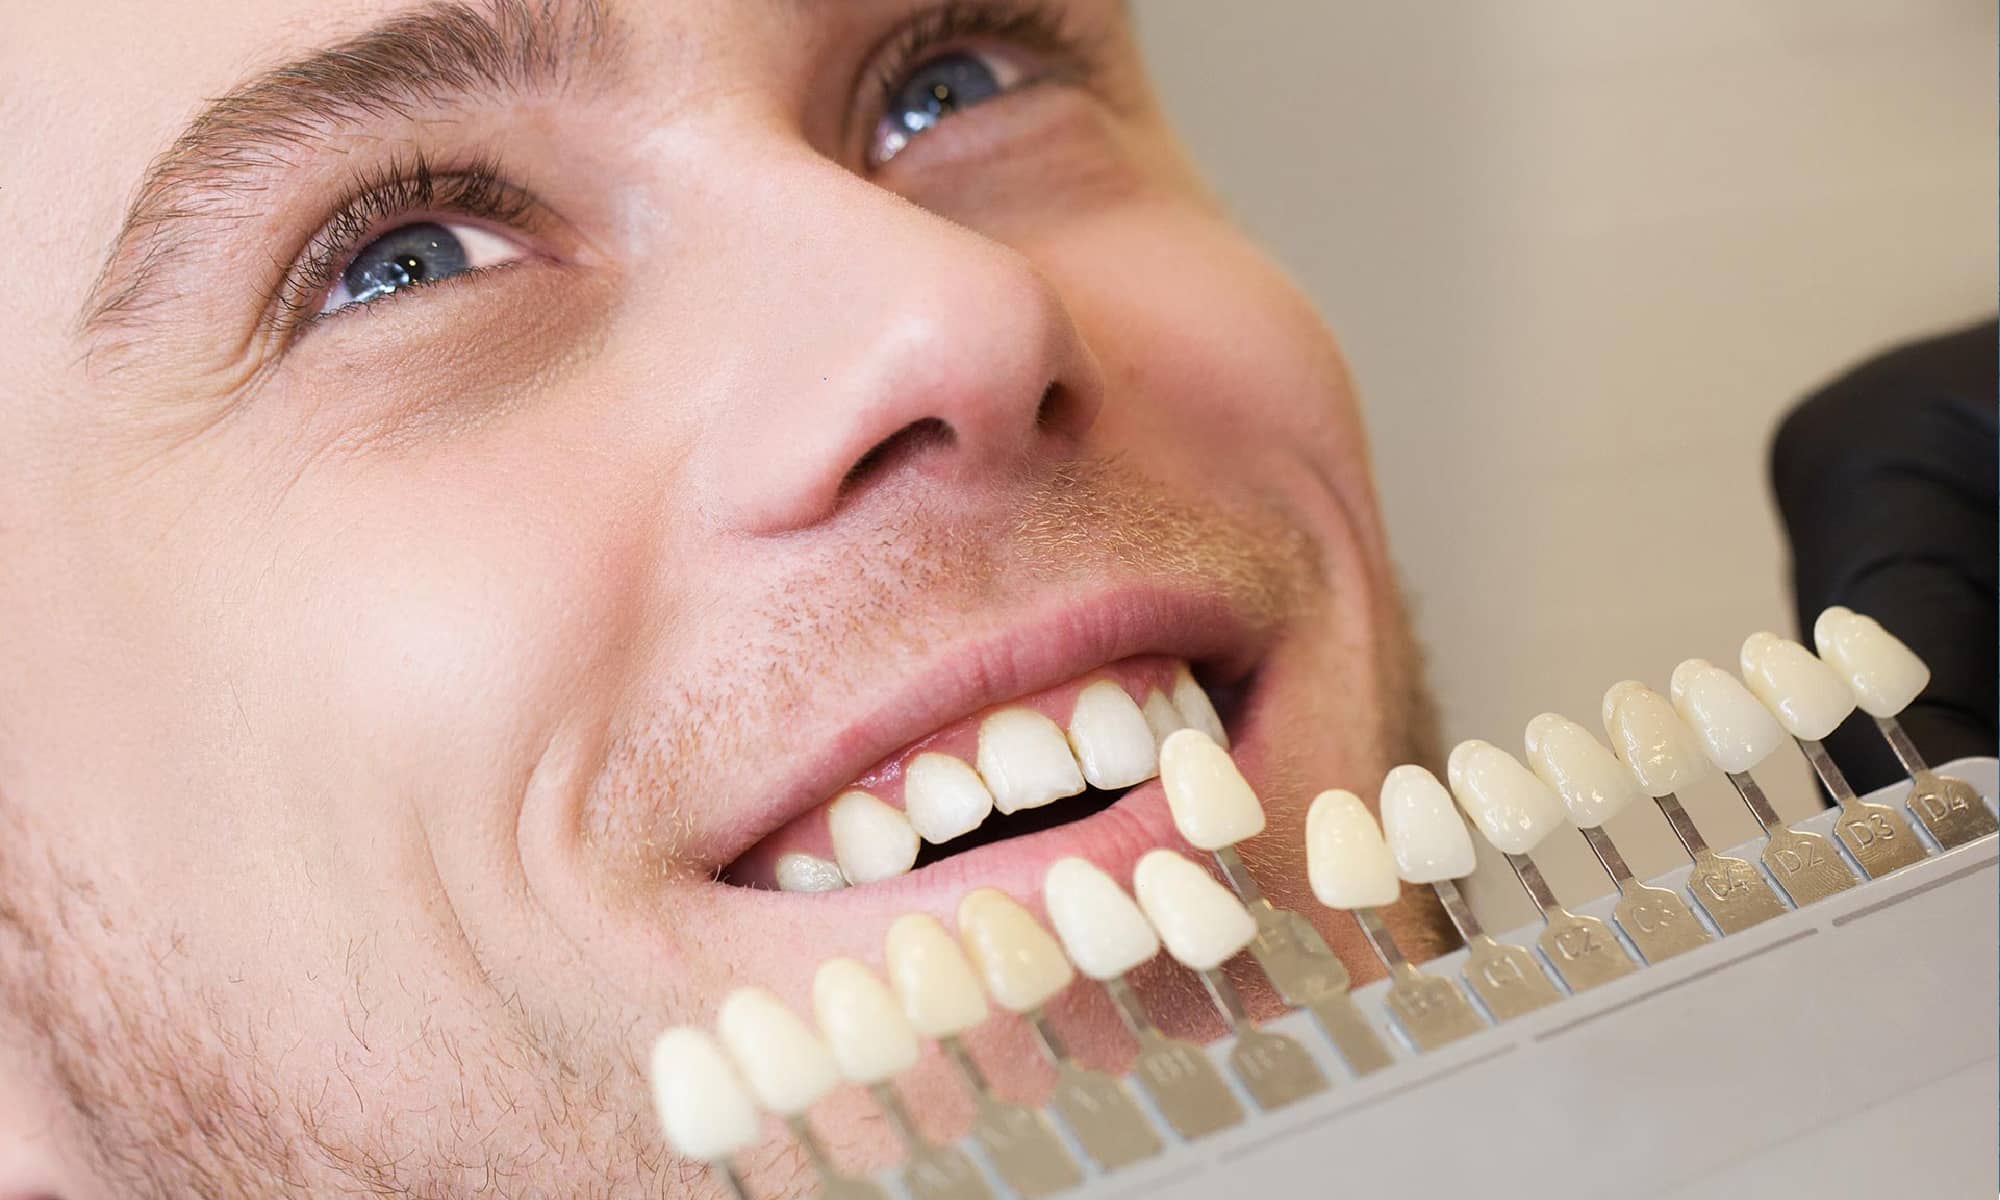 آیا لمینت دندان باعث خرابی دندان ها میشود؟